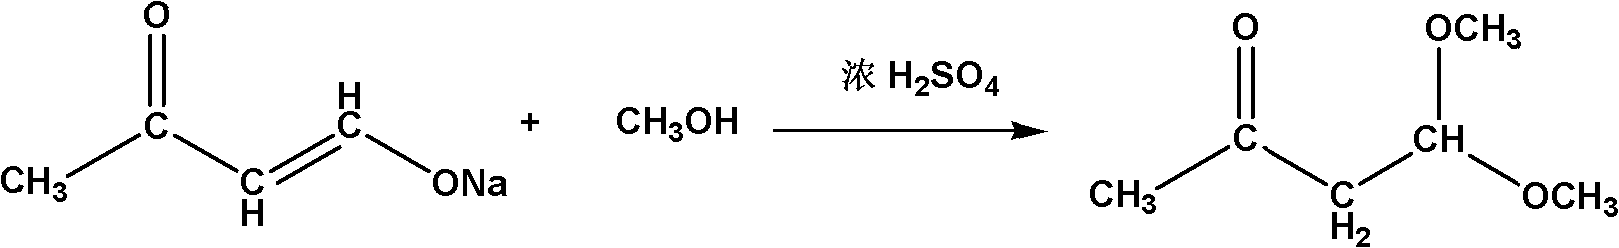 Method for synthesizing 4,4-dimethoxy-2-butanone